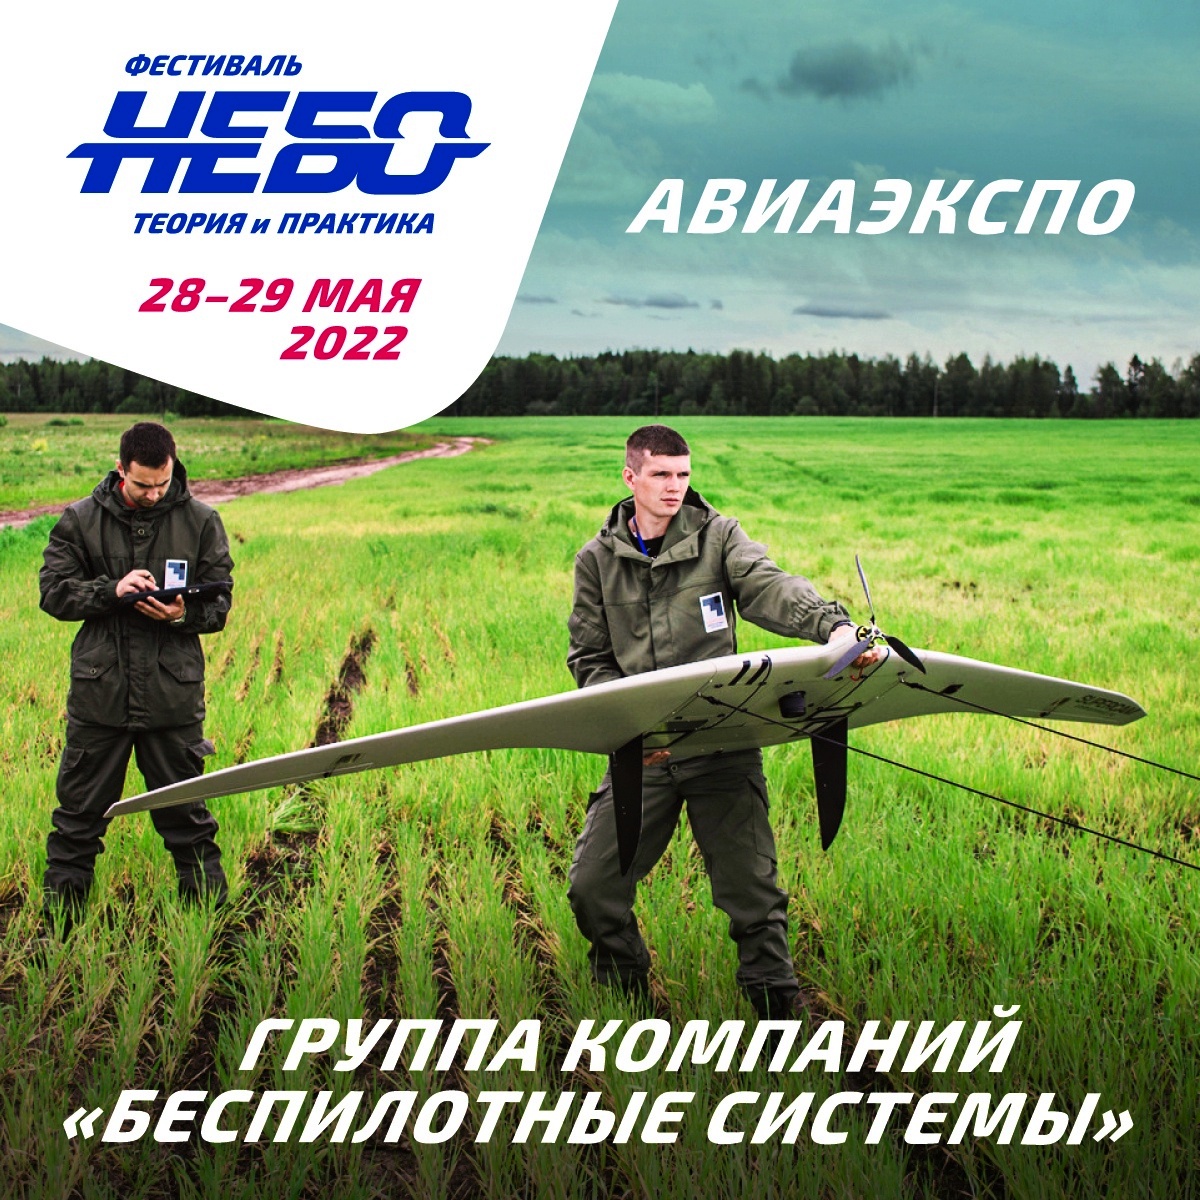 Авиационный фестиваль «Небо: теория и практика» прошел в Подмосковье